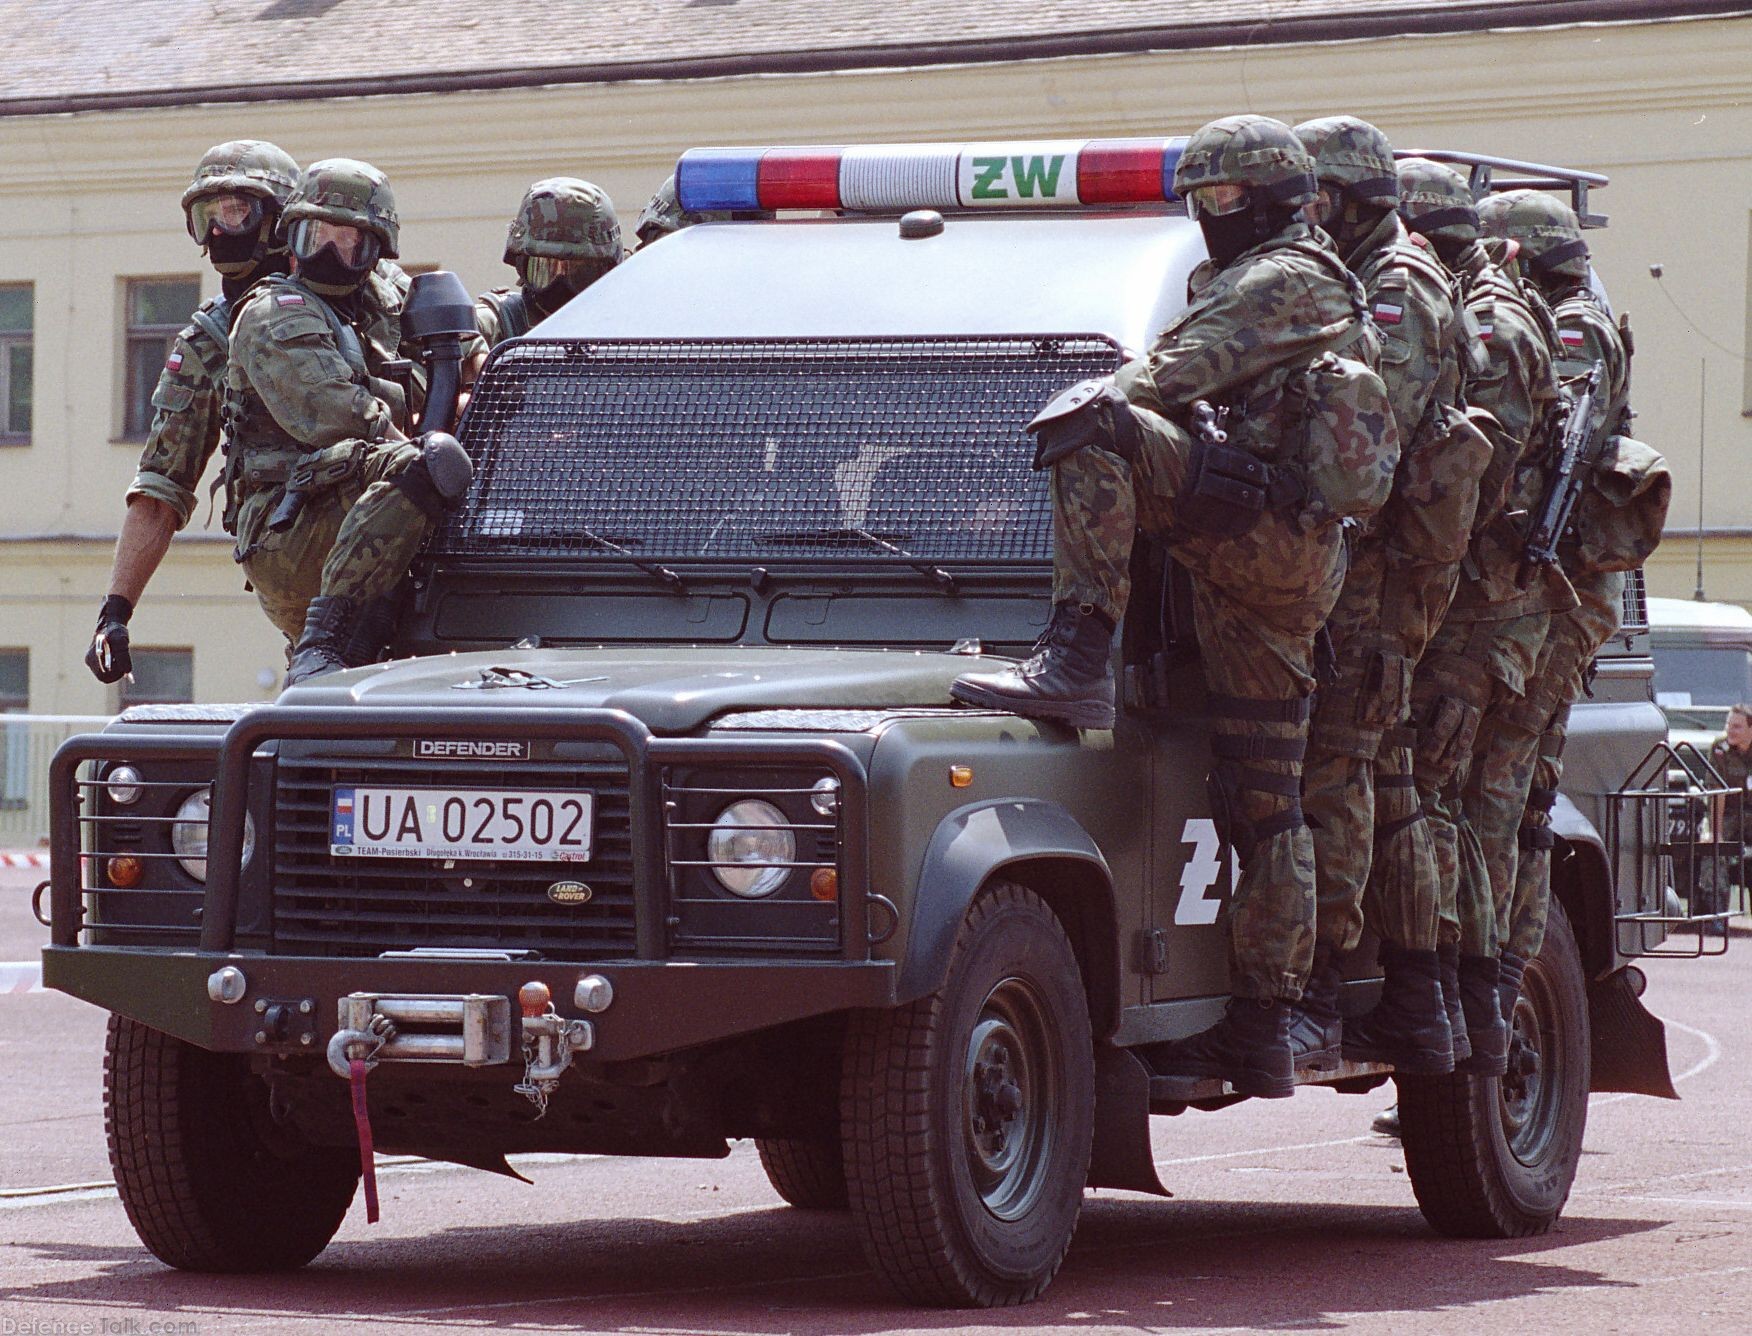 Polish Military Police